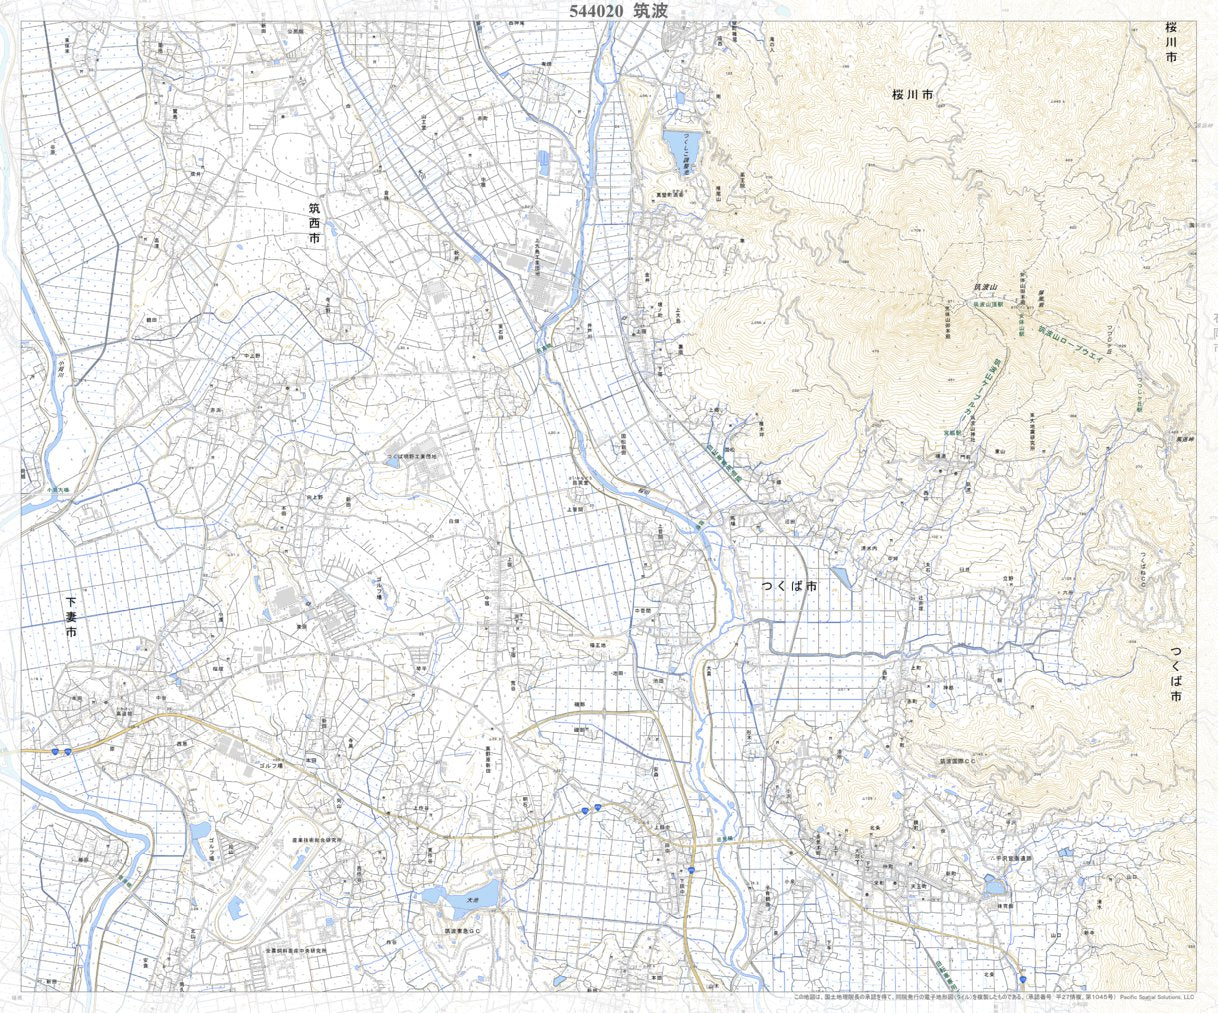 544020 筑波 （つくば Tsukuba）, 地形図 Map by Pacific Spatial 